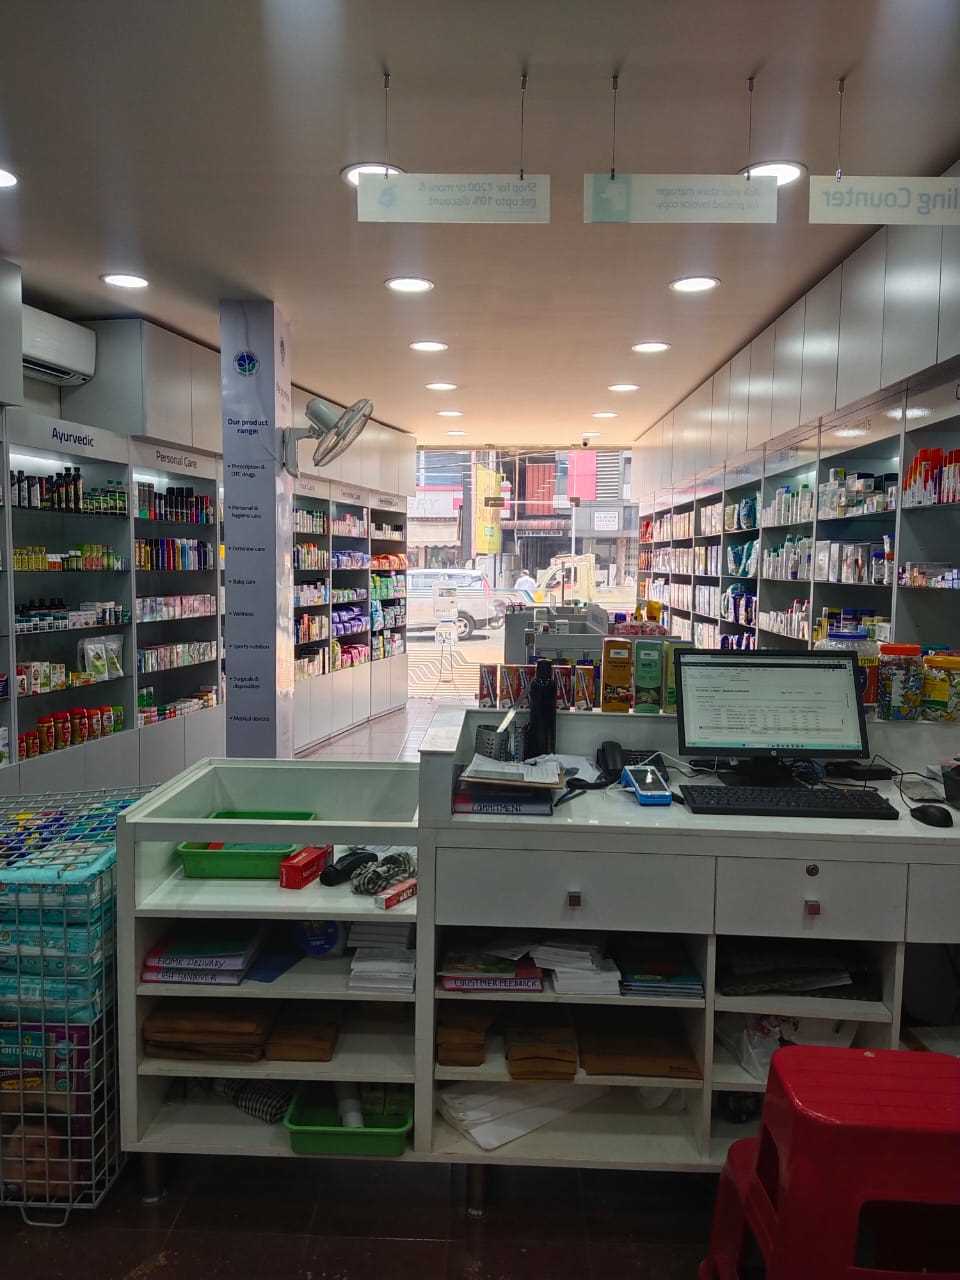 Aster Pharmacy in Ollur Center, Thrissur